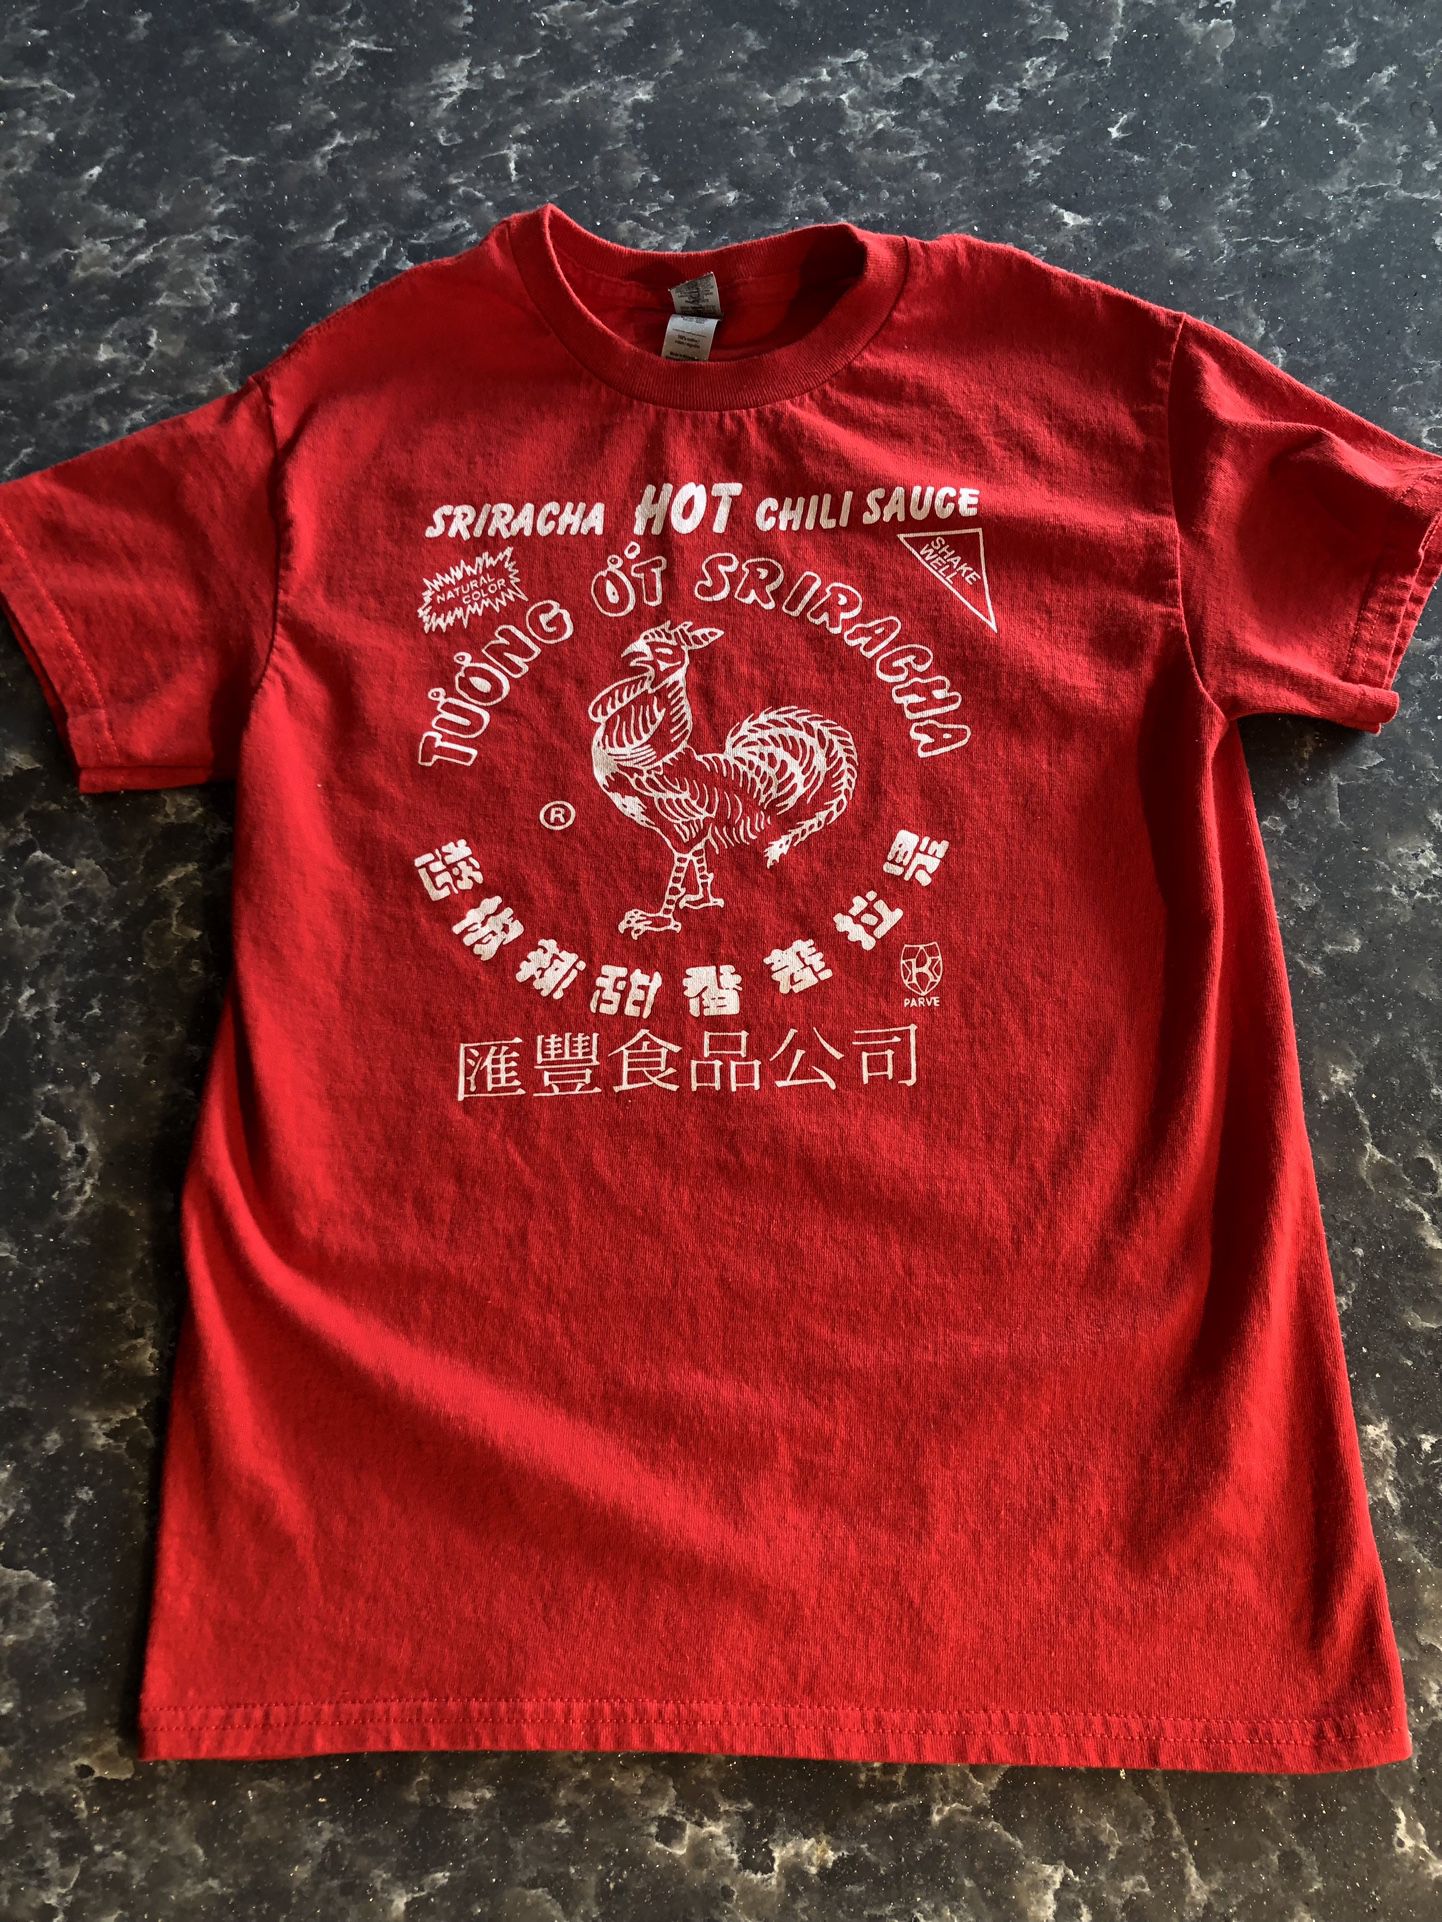 Women’s Vintage Sriracha Hot Chili Sauce Shirt (S)